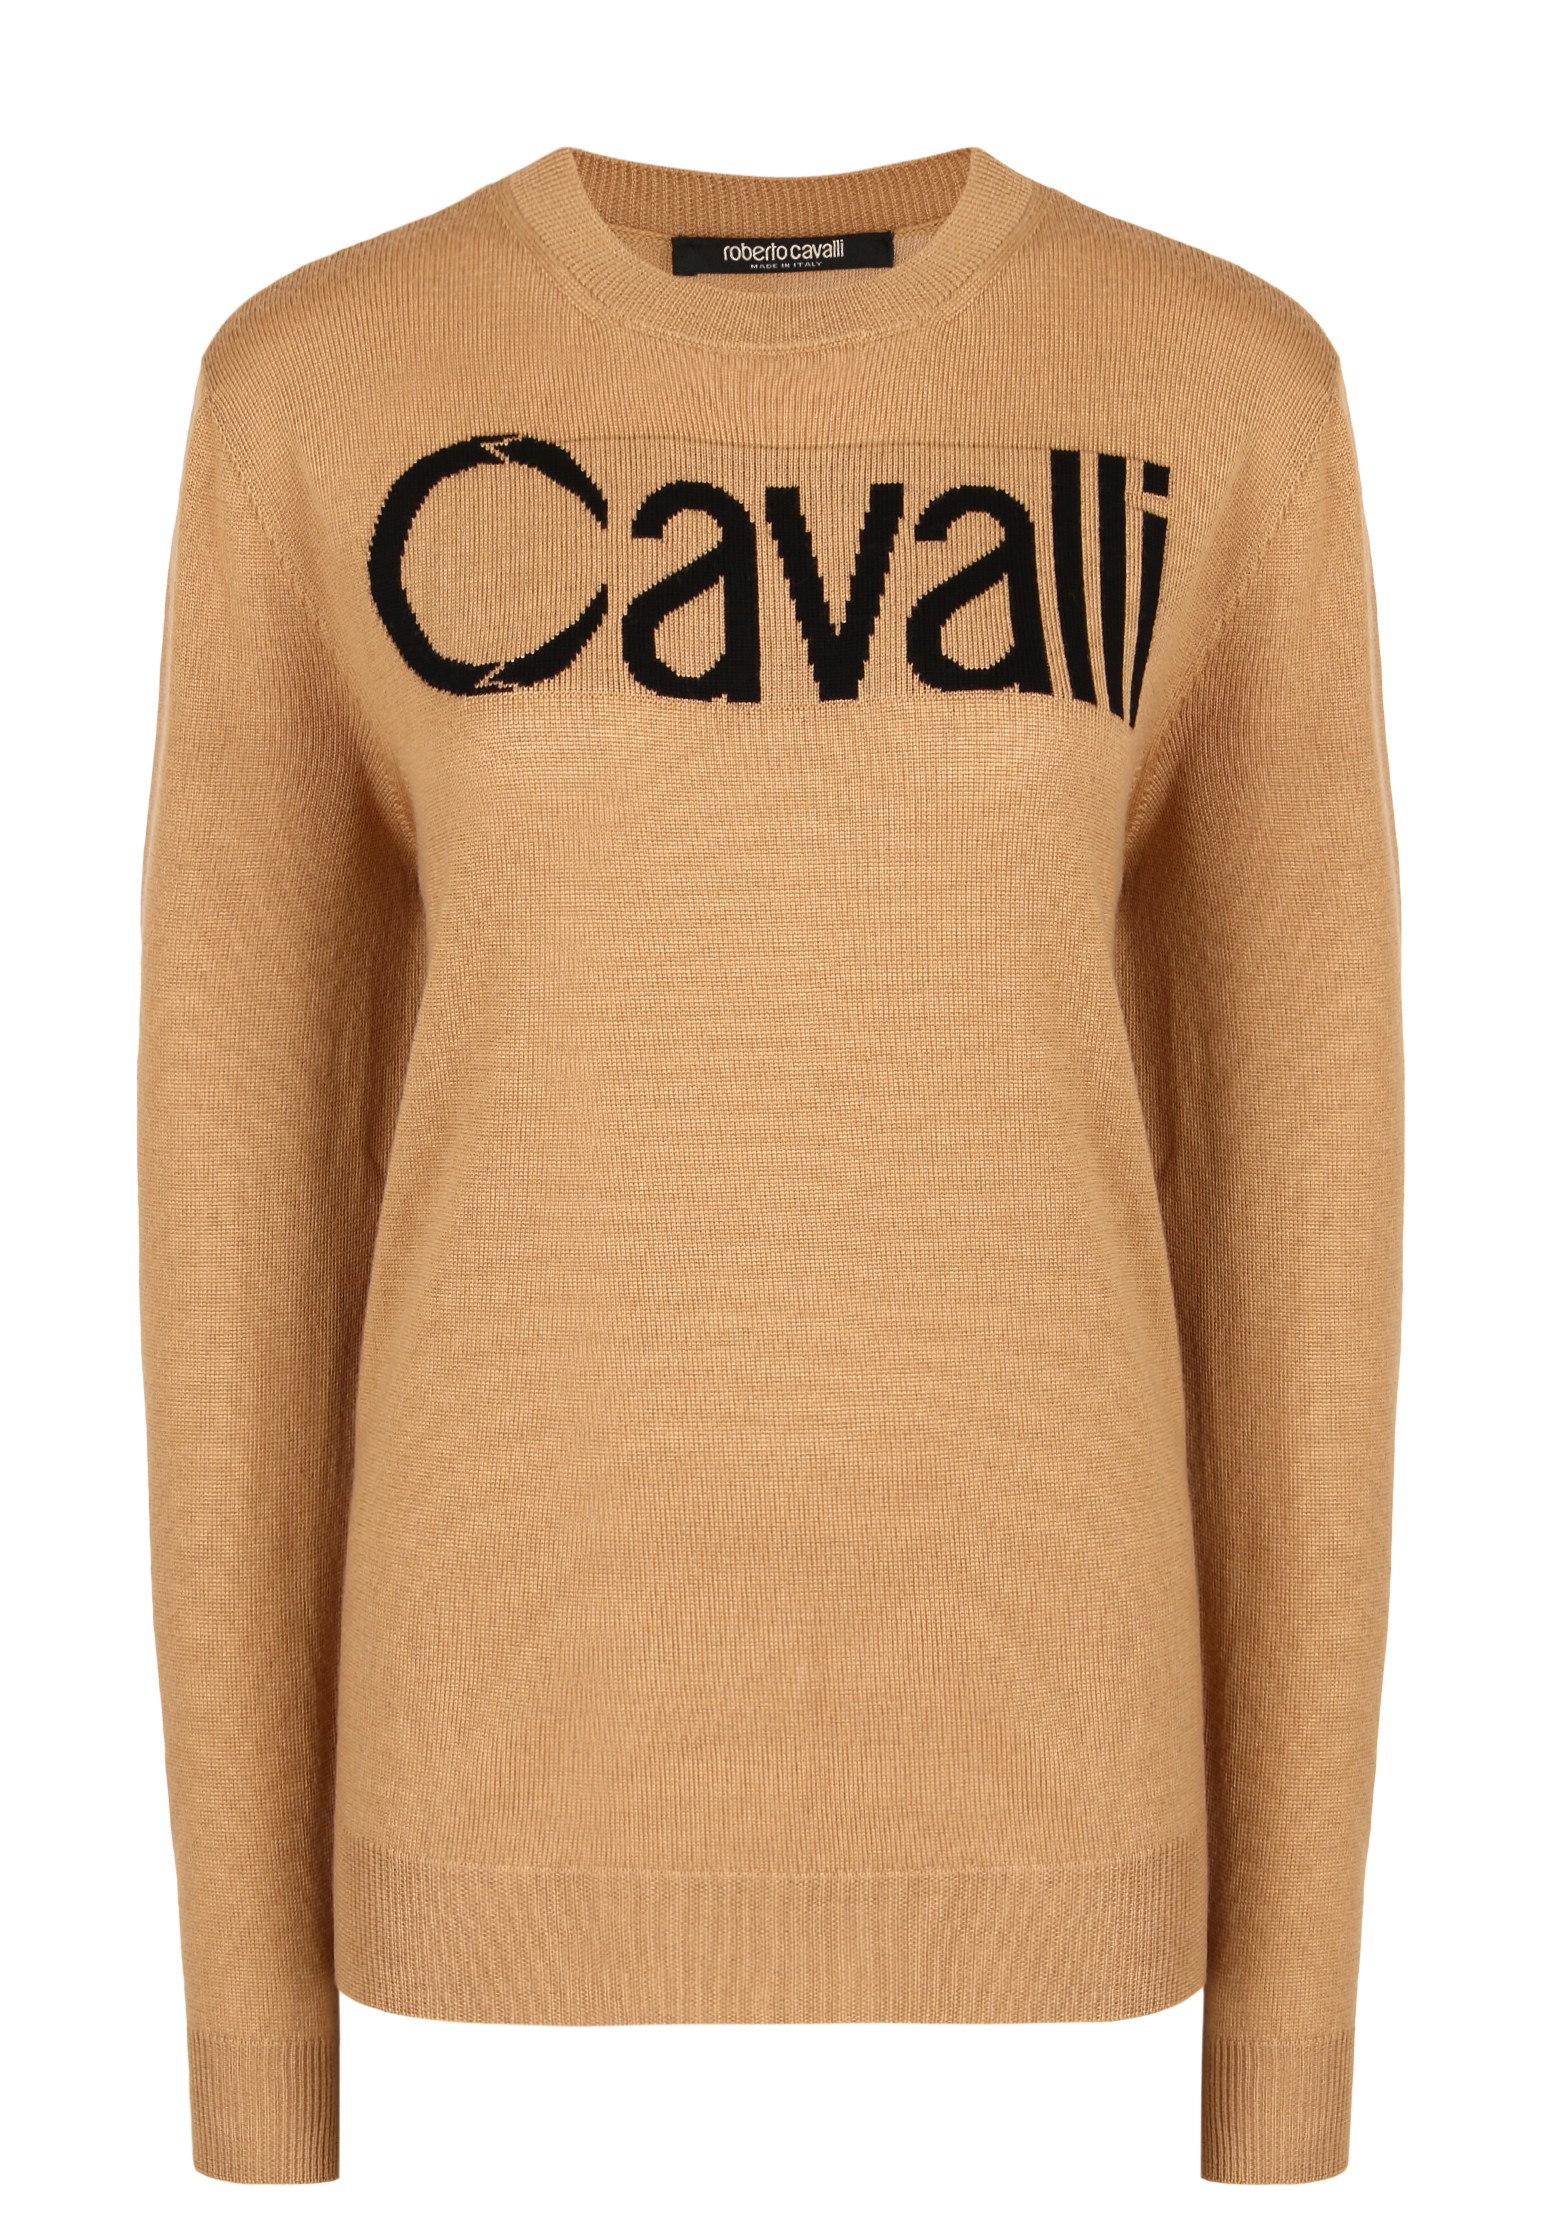 Джемпер мужской Roberto Cavalli 136599 коричневый L